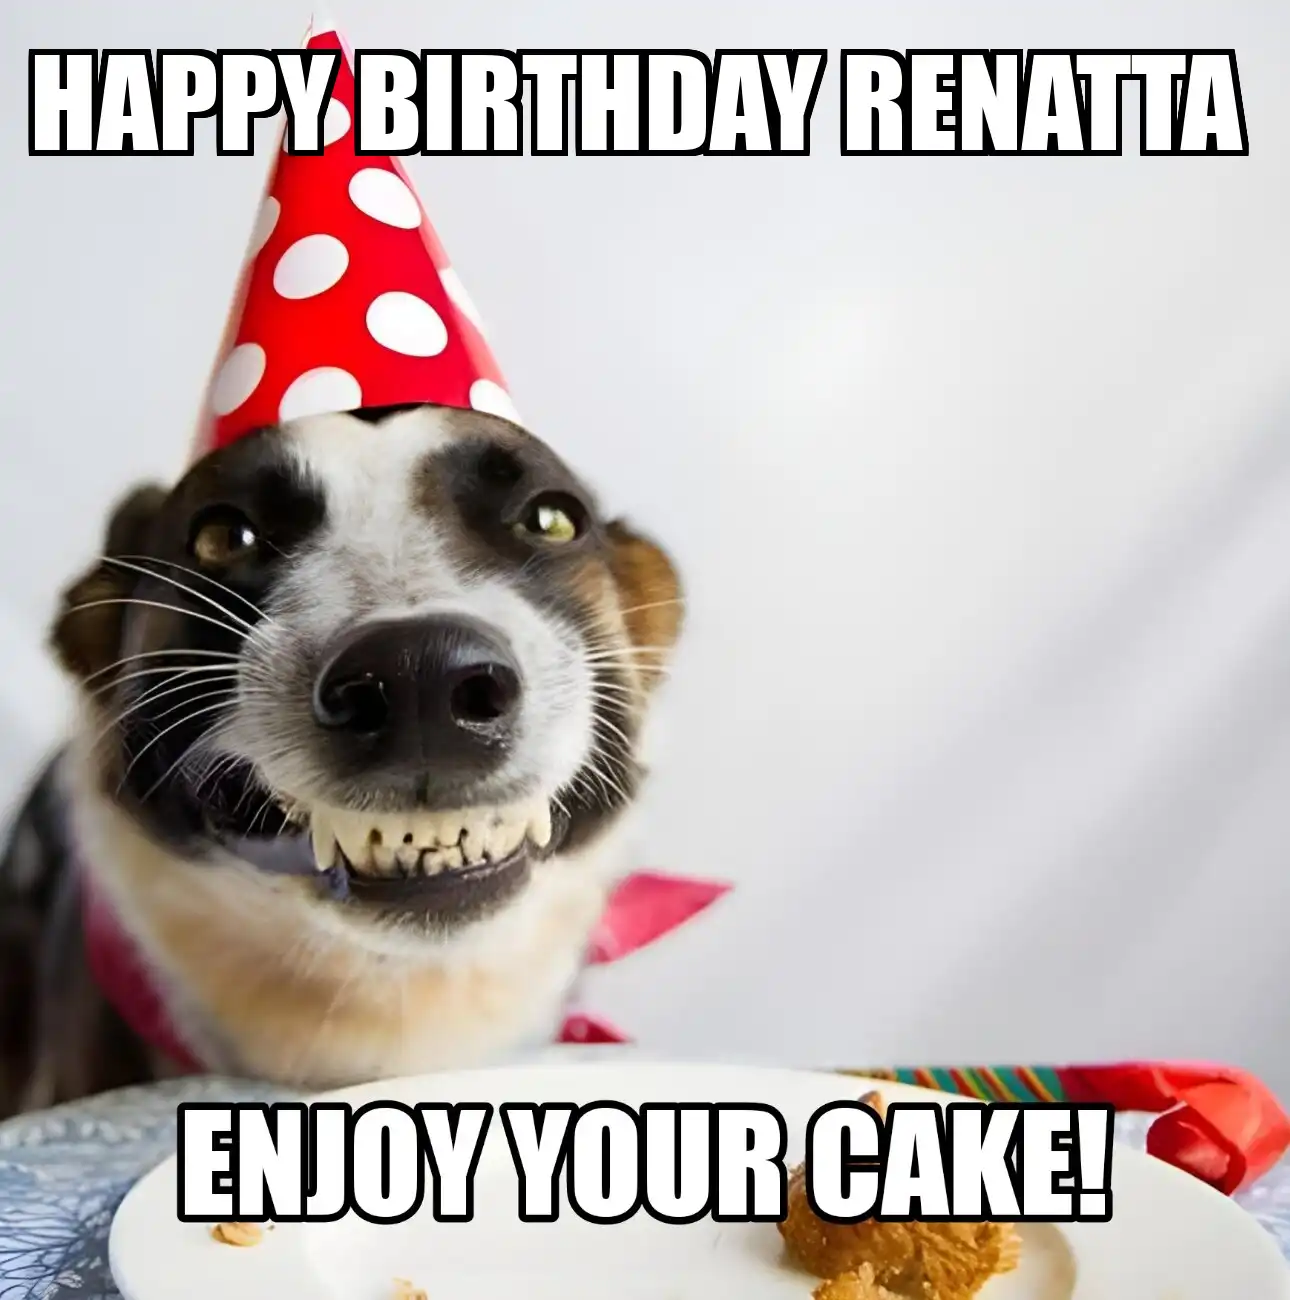 Happy Birthday Renatta Enjoy Your Cake Dog Meme